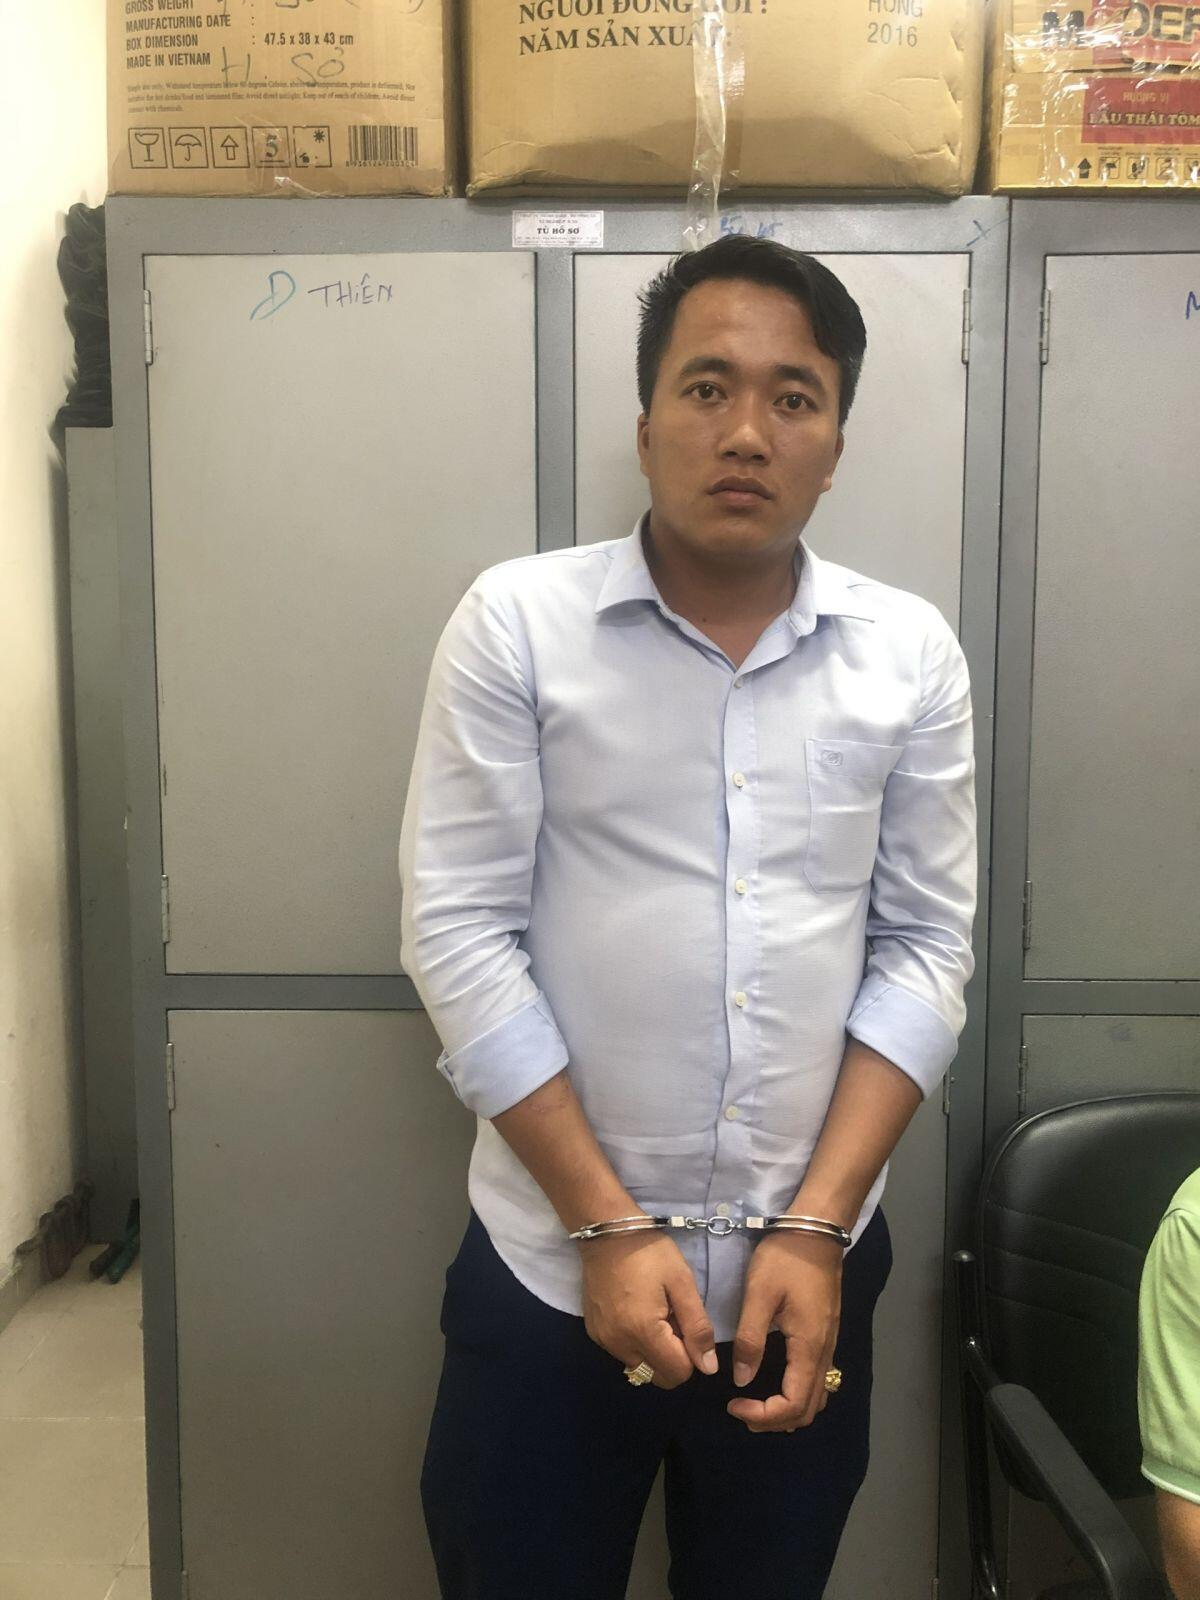 Tổng Giám đốc 27 tuổi doanh nghiệp bán dự án "ma” tại Đồng Nai bị tạm giữ hình sự